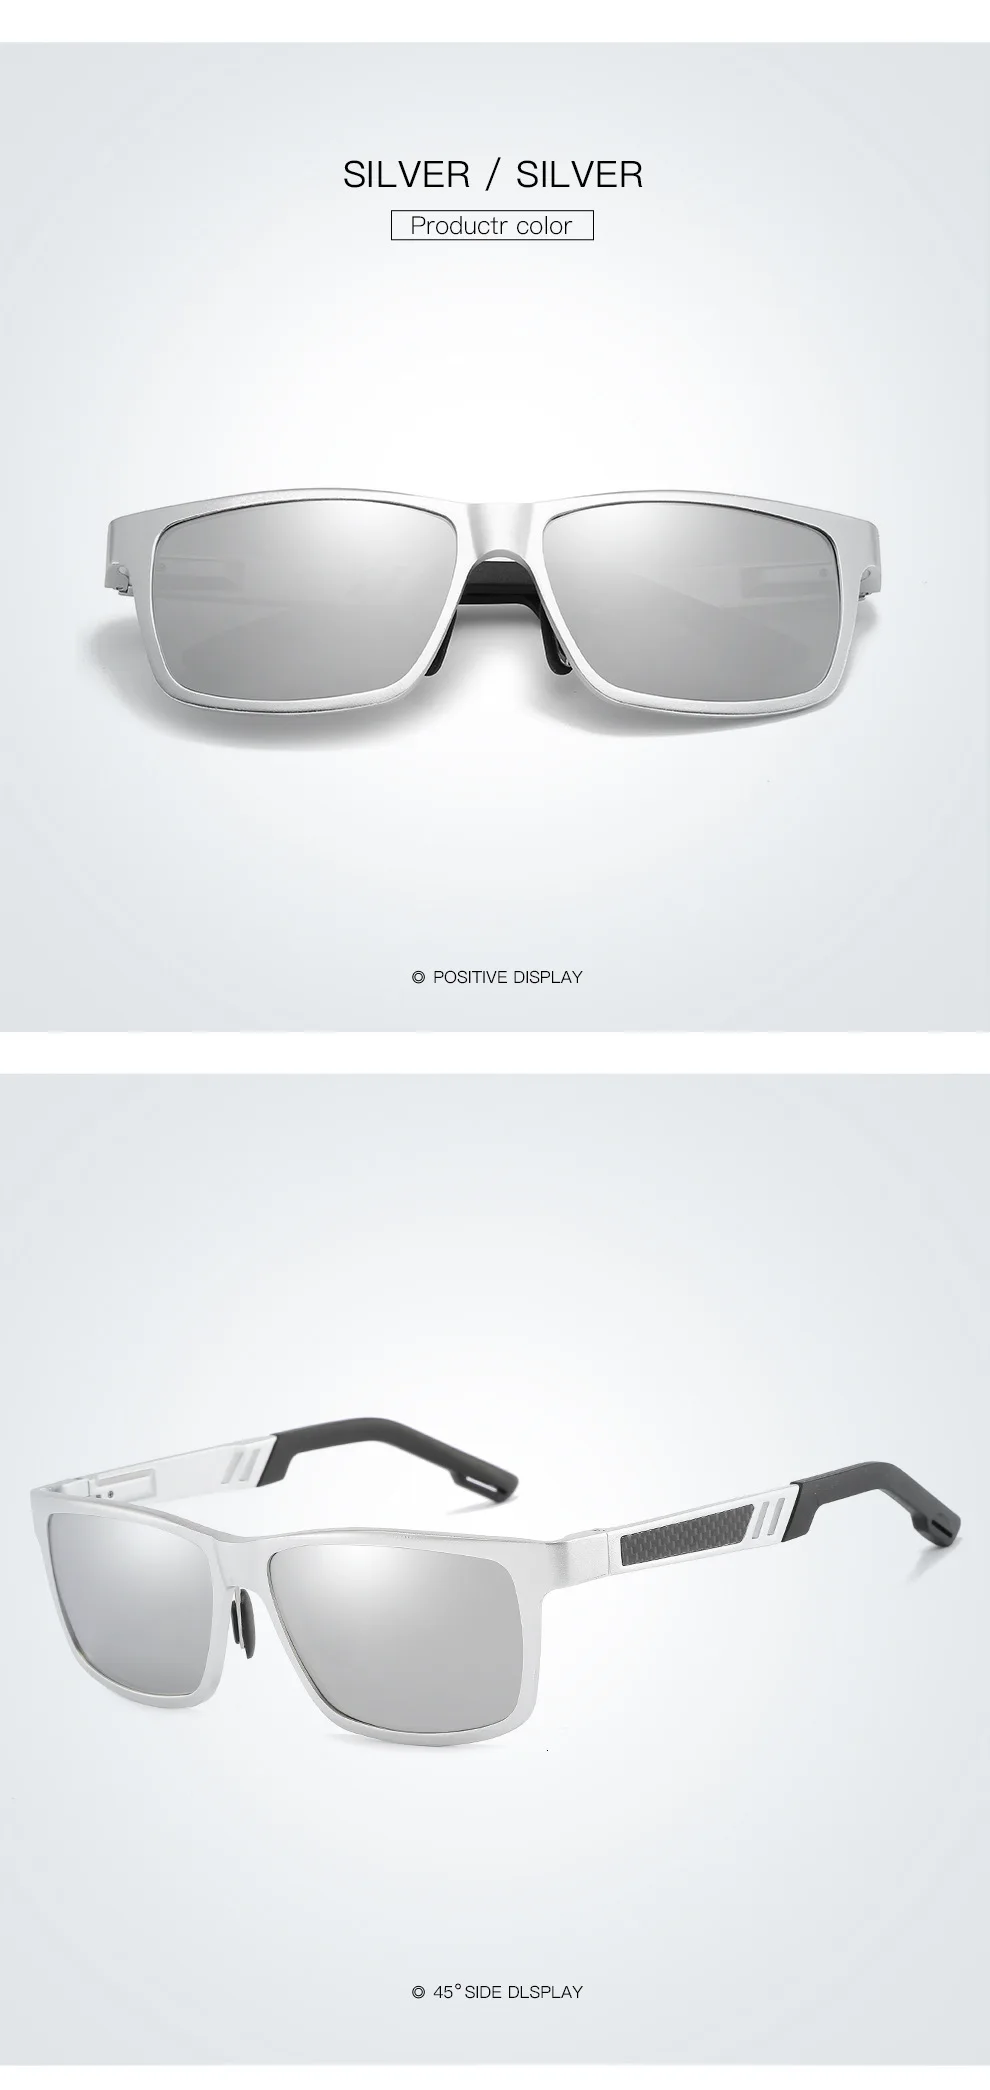 Акула парус горячий луч анти мужские Солнцезащитные очки женские солнцезащитные мужские вождения UV400 антибликовые фотохромные зеркальные поляризованные квадратные очки